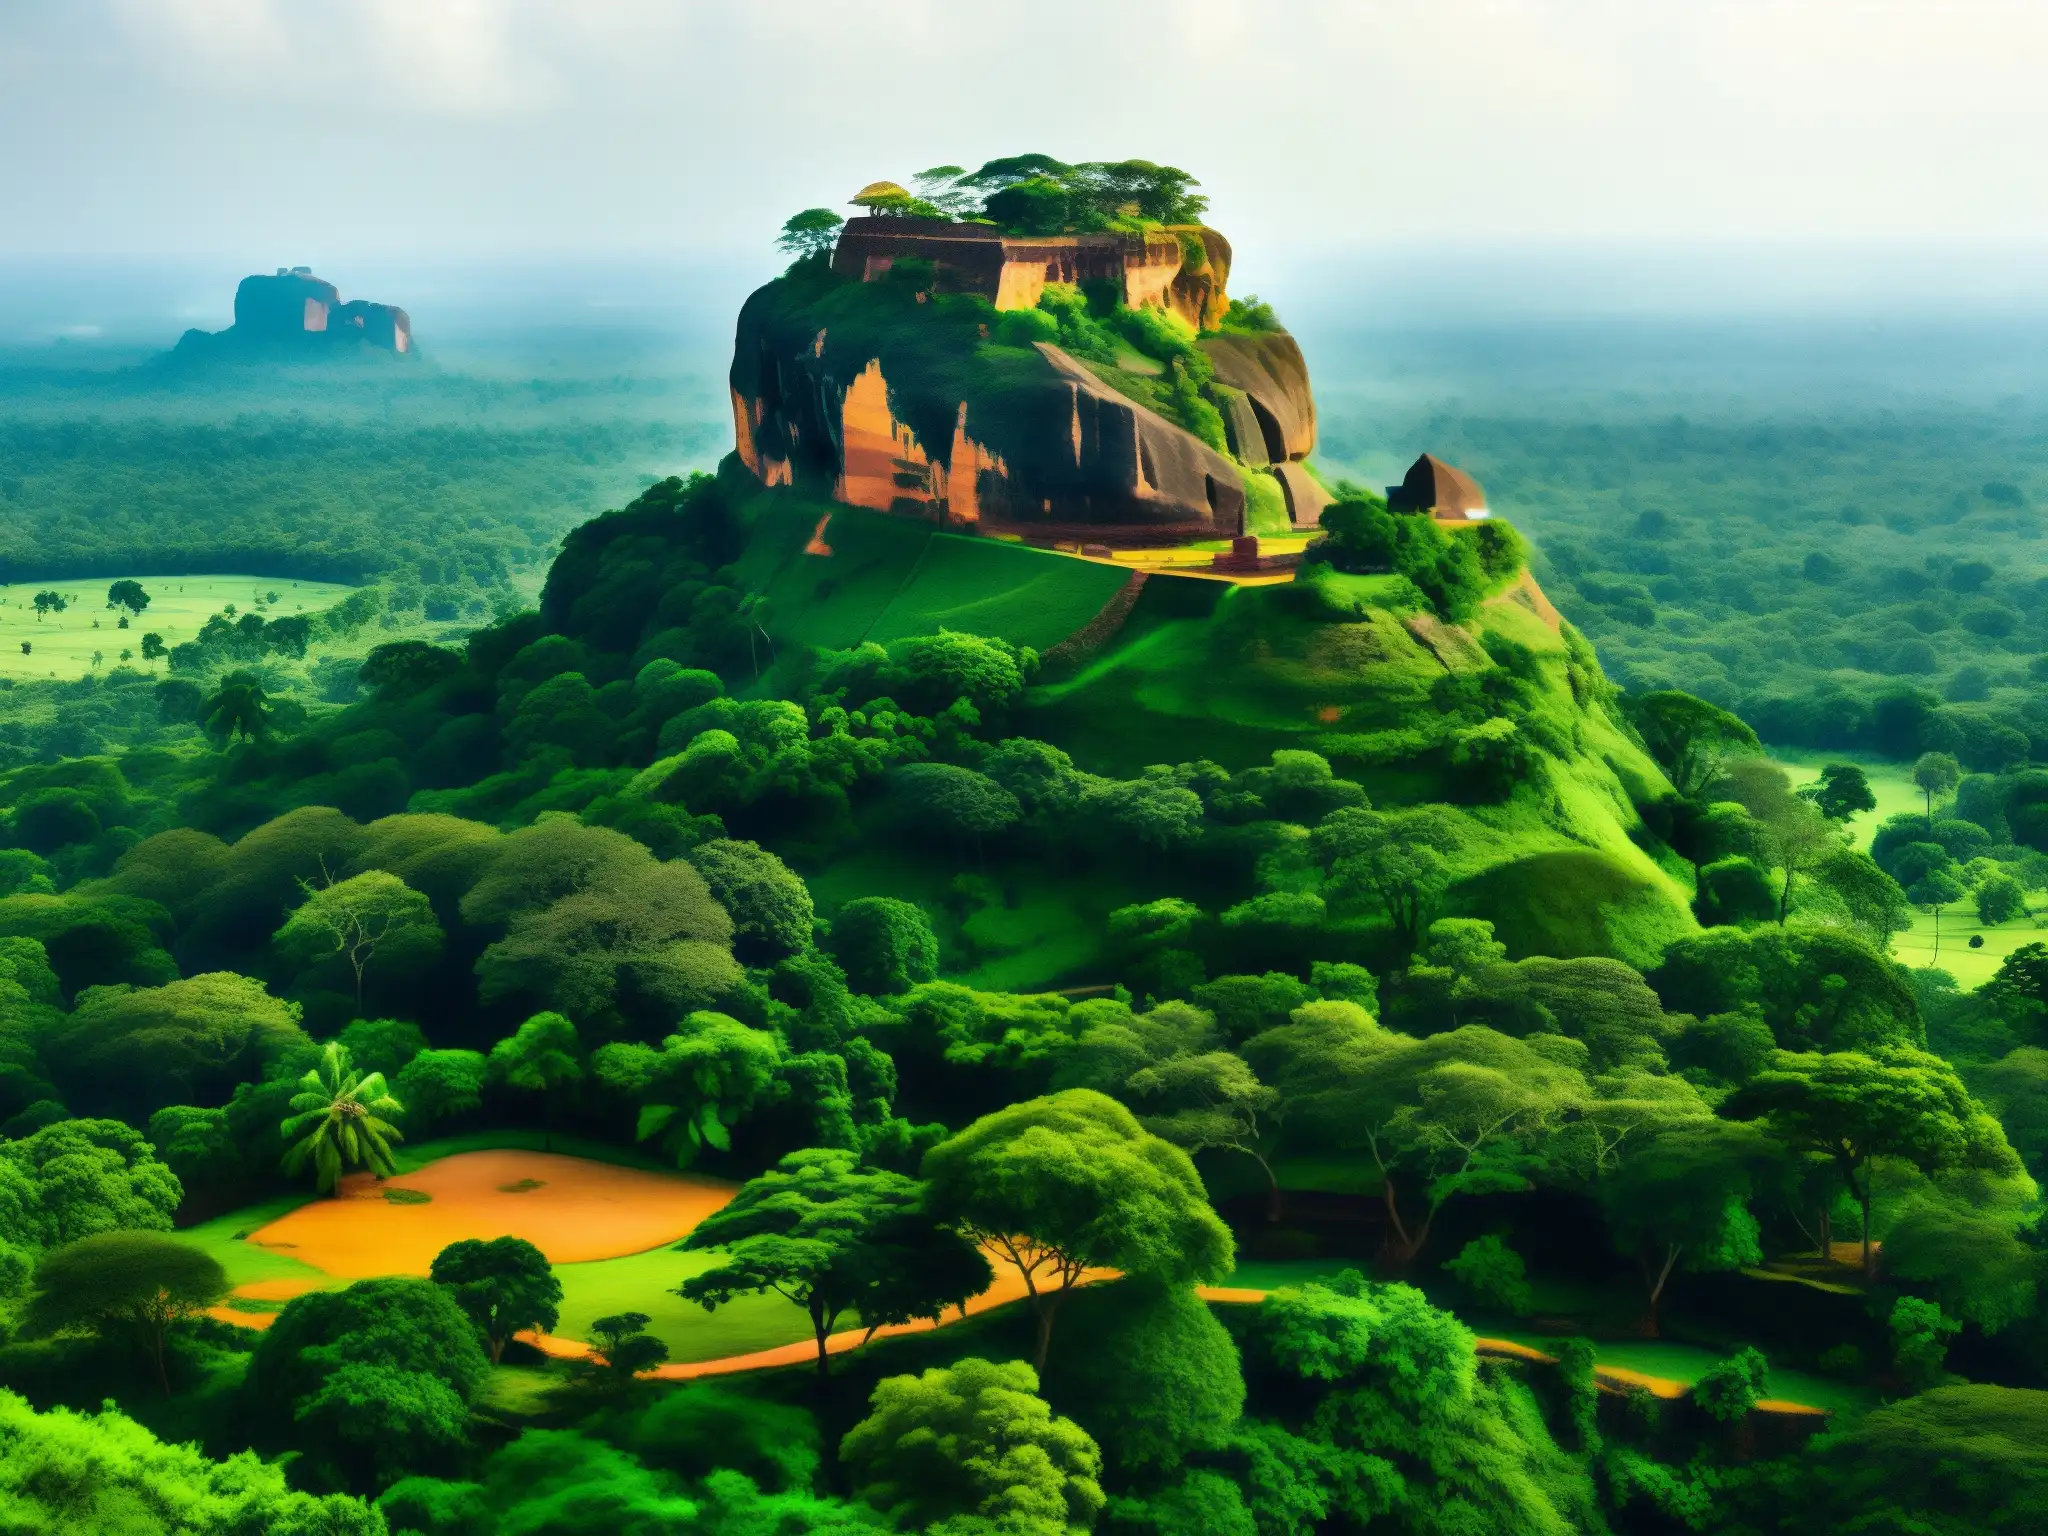 Vista documental de la legendaria fortaleza rocosa de Sigiriya en Sri Lanka, evocando exploración de la leyenda y la historia del lugar